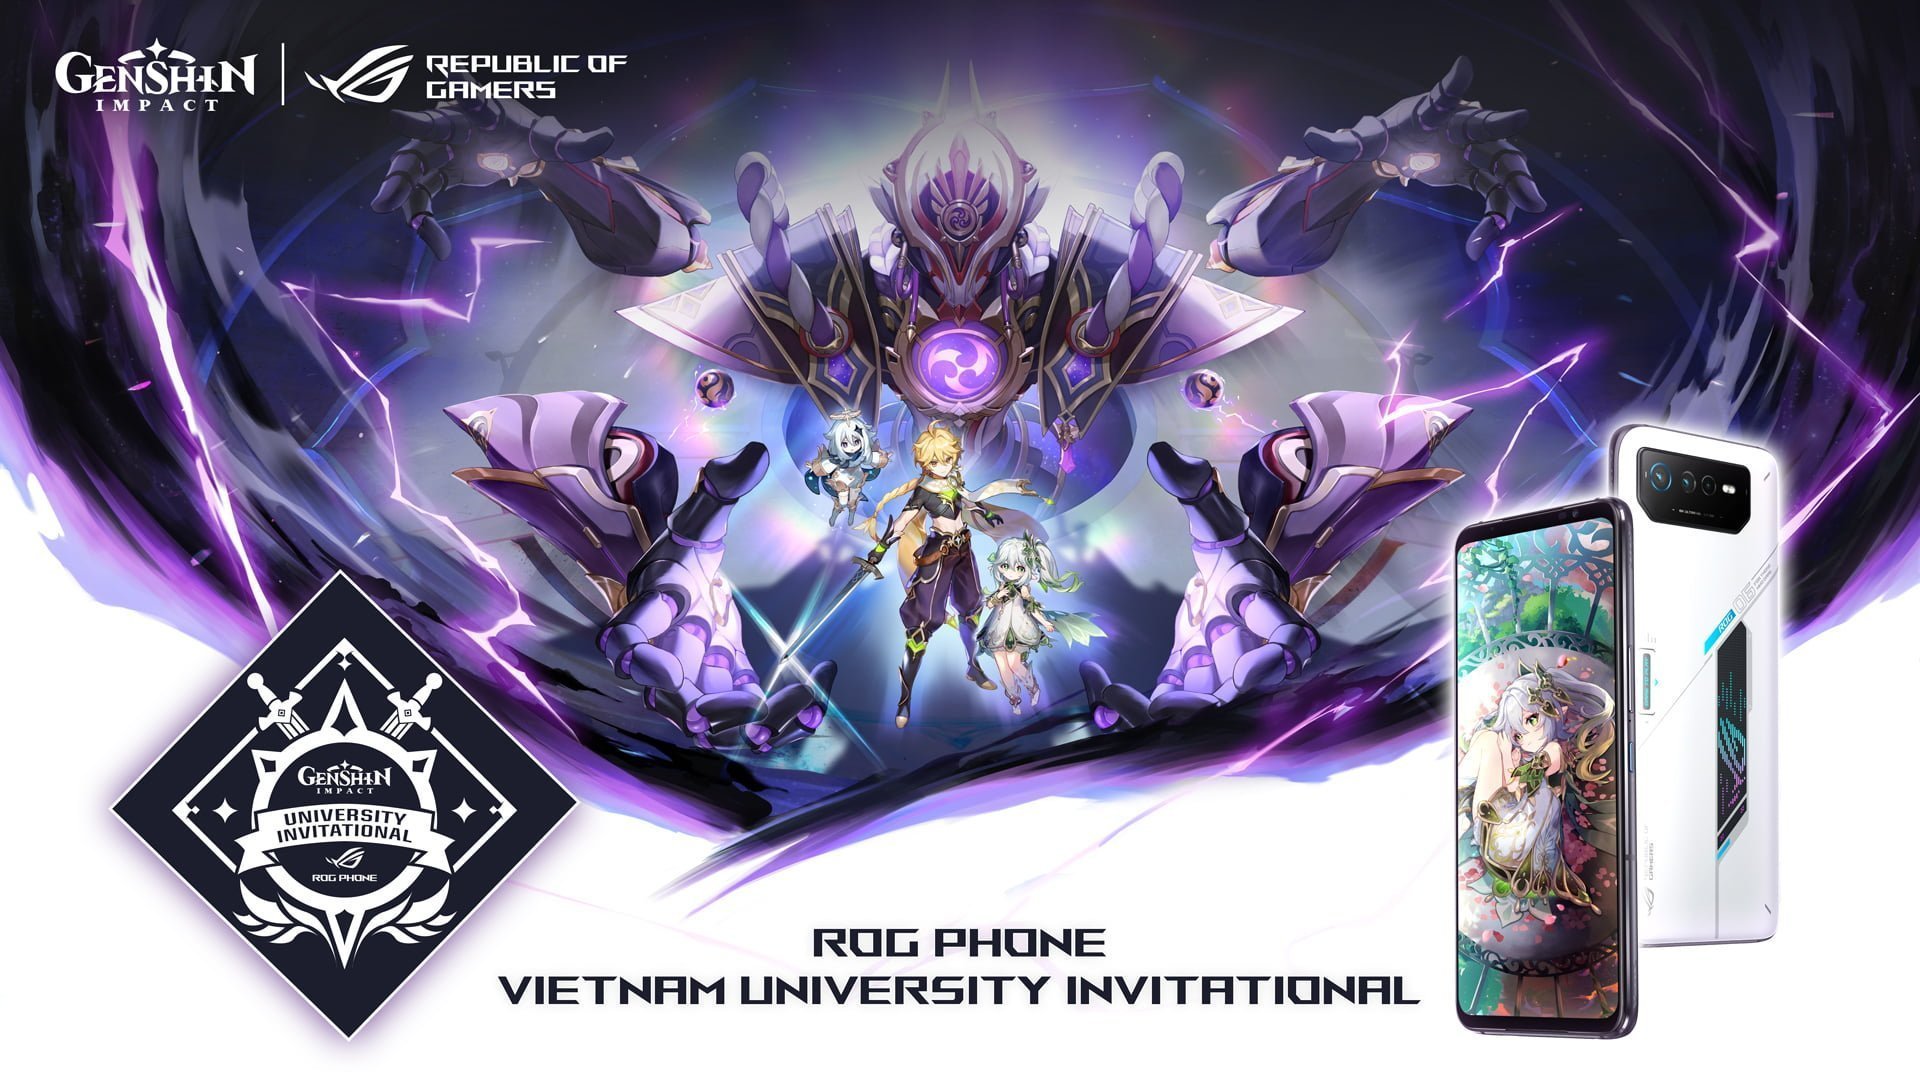 [PR] ASUS ROG công bố giải đấu ROG Phone Vietnam University Invitational kết hợp cùng tựa game Genshin Impact - Image 6